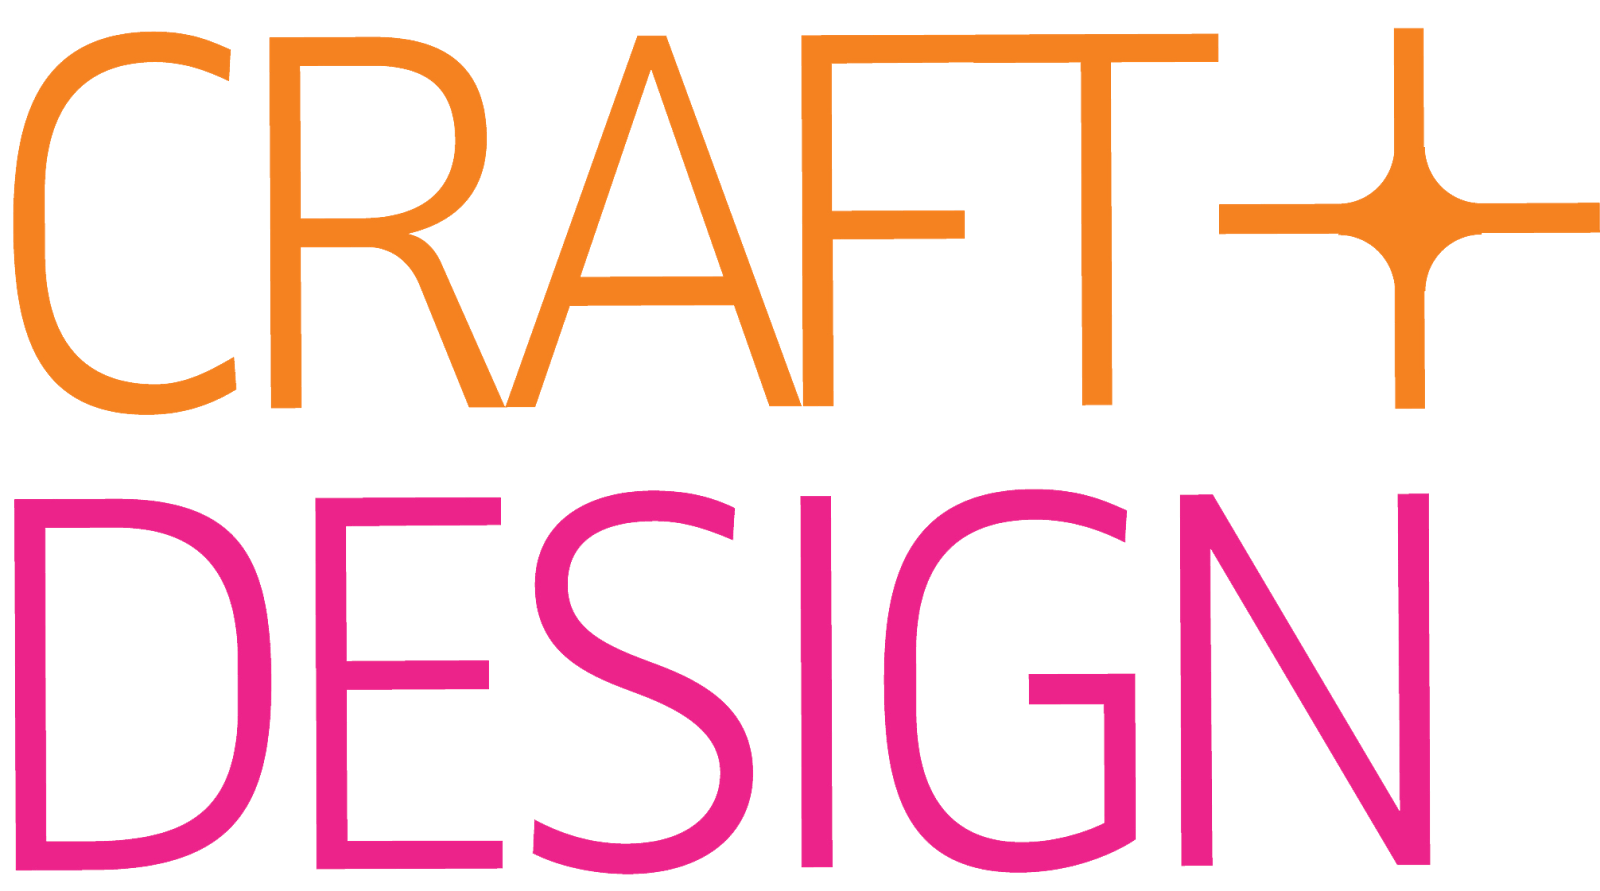 Craft Design